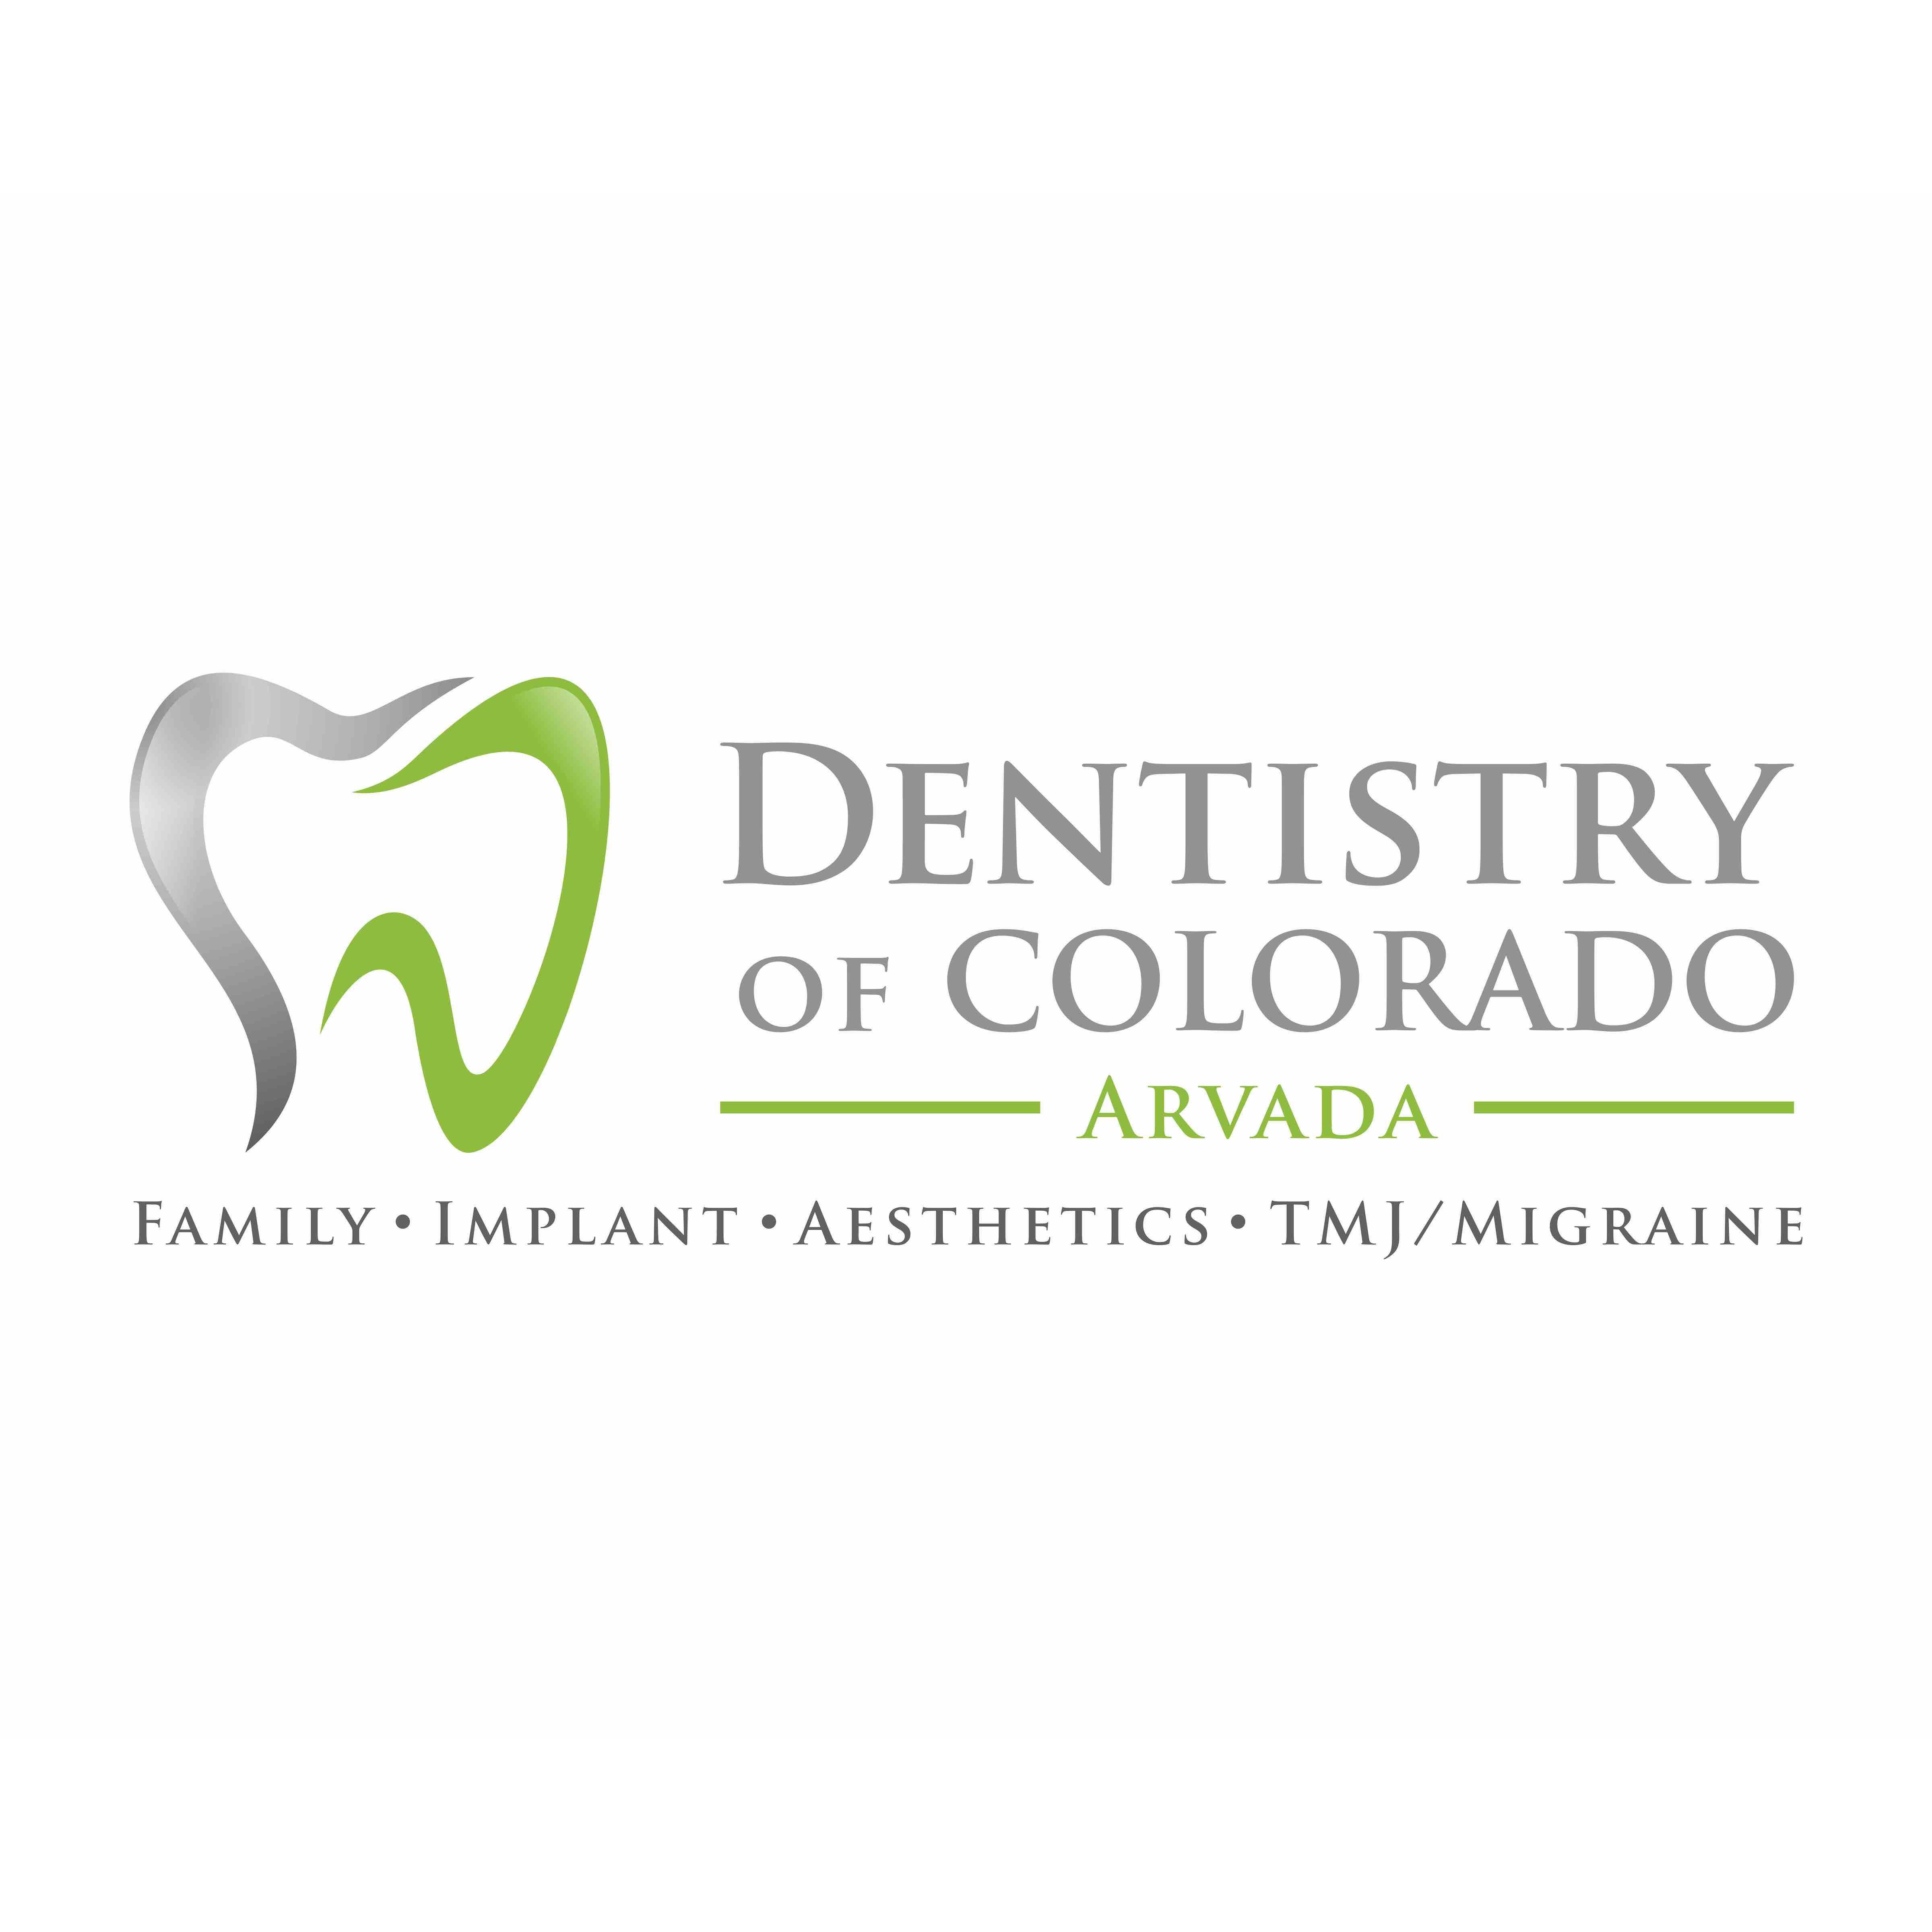 Dentistry of Colorado Arvada